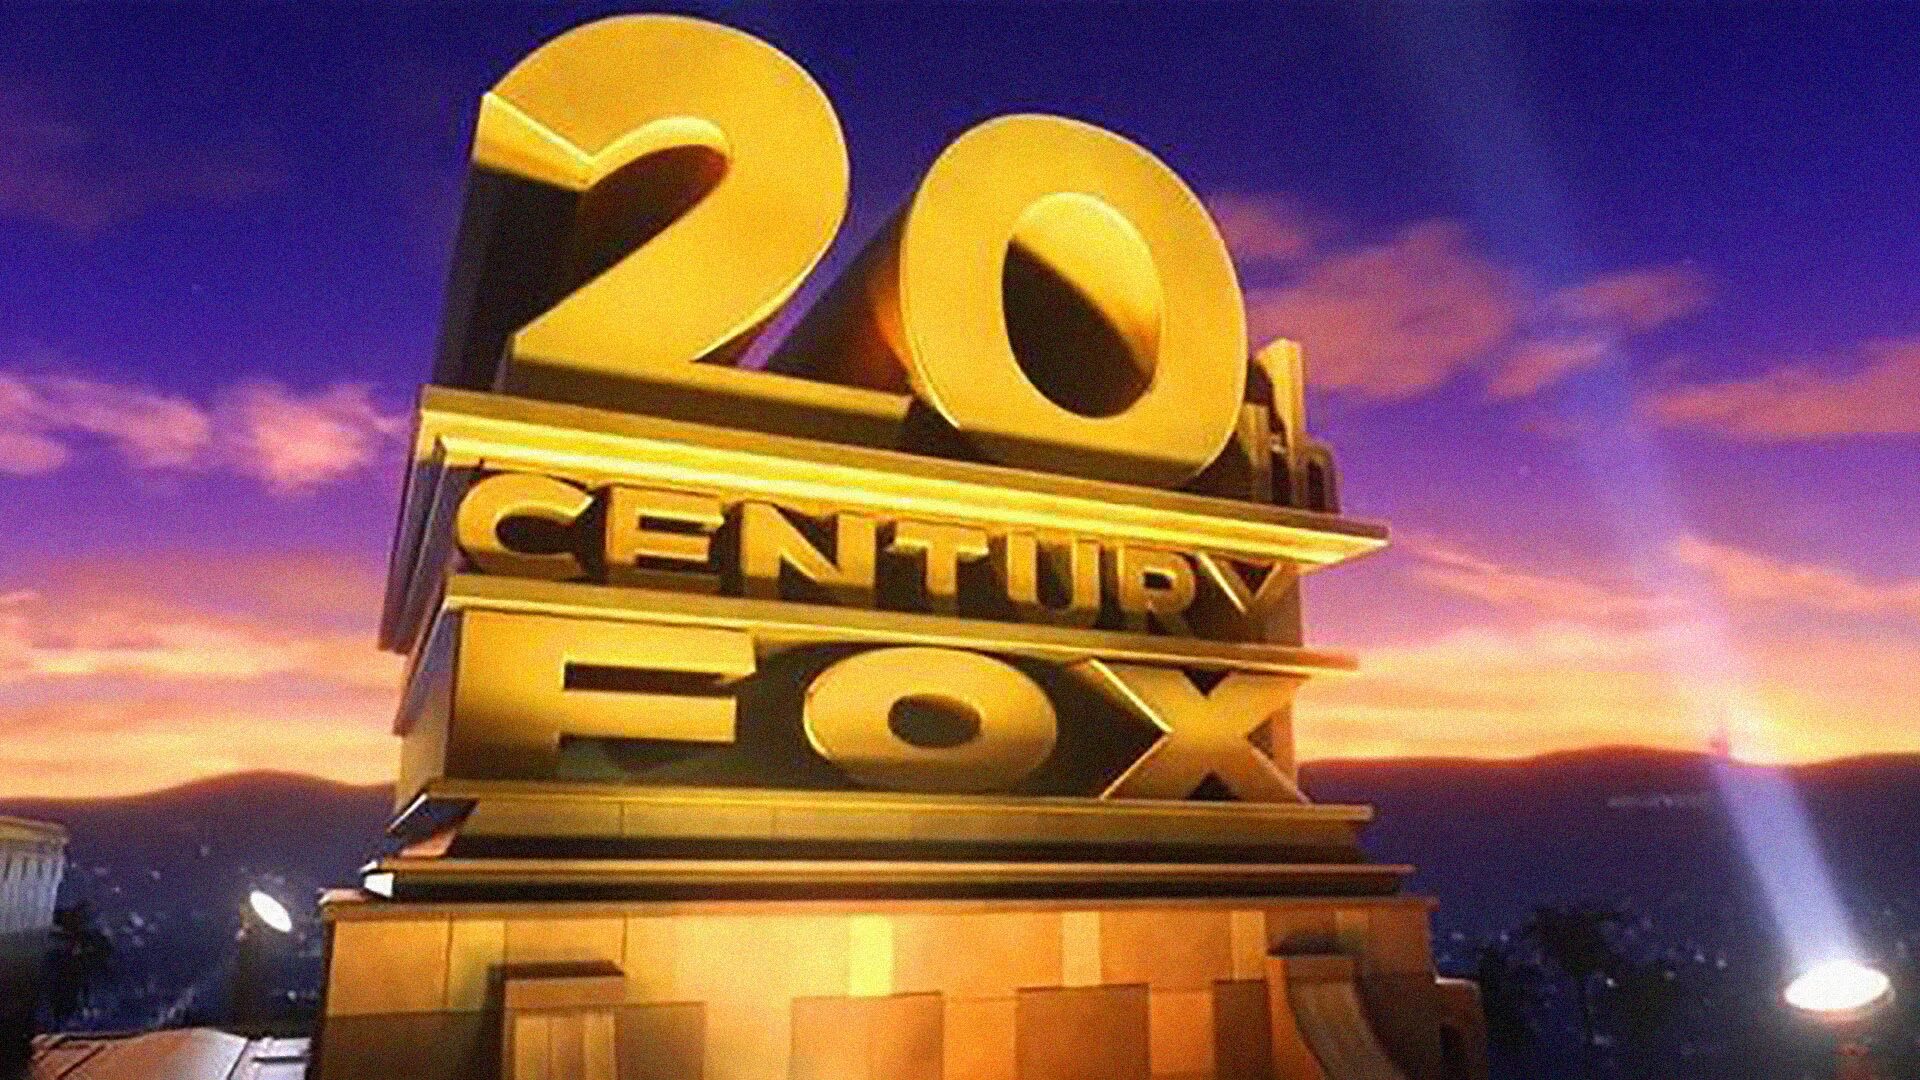 Двадцатый век Фокс студия. 20 Век Центури Фокс. 20th Century Fox Rio. 20 Rh Century Fox. 20 th century